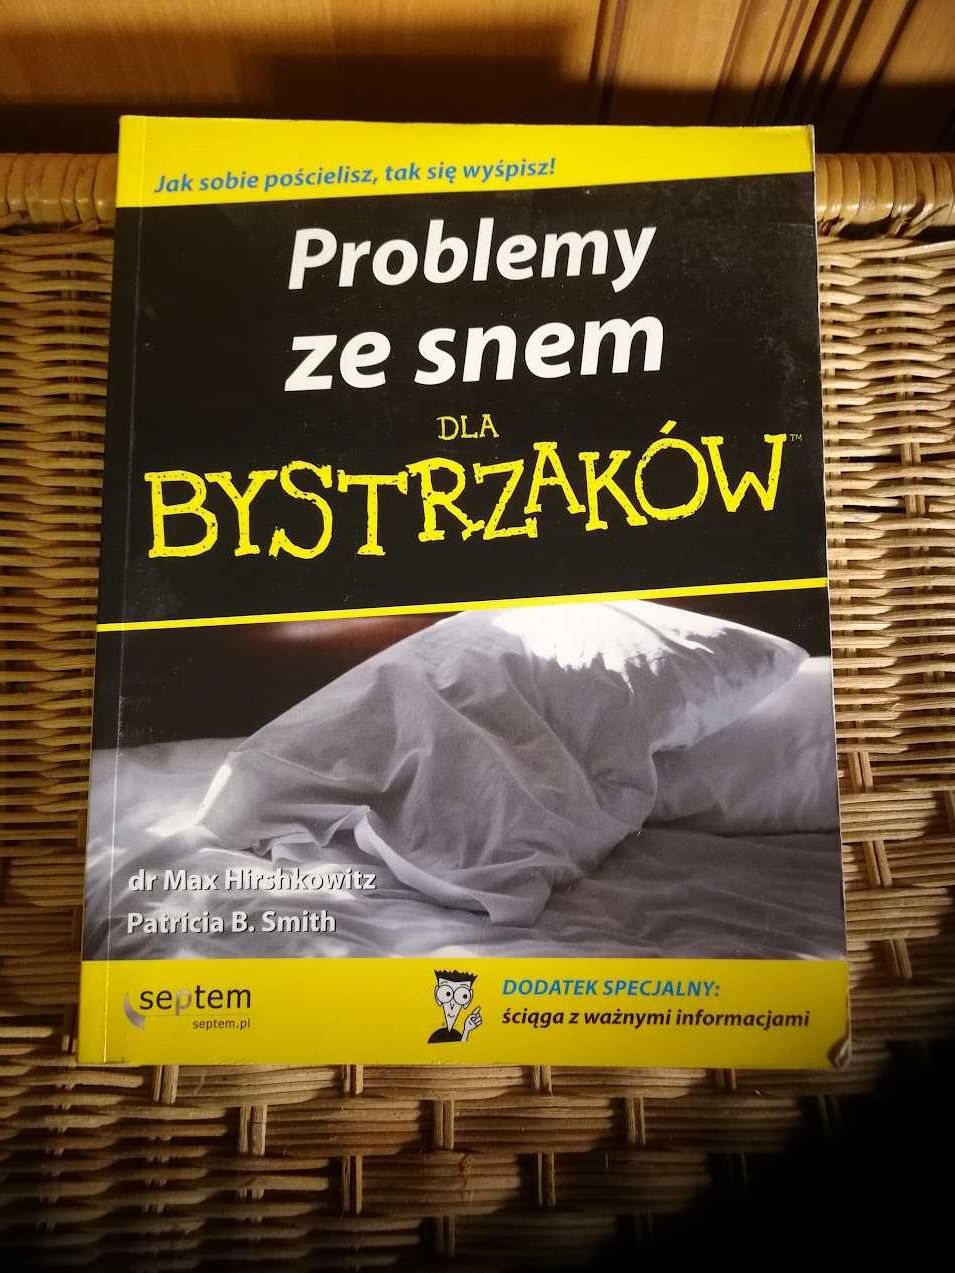 "Problemy ze snem dla bystrzaków" dr Max Hirshkowitz